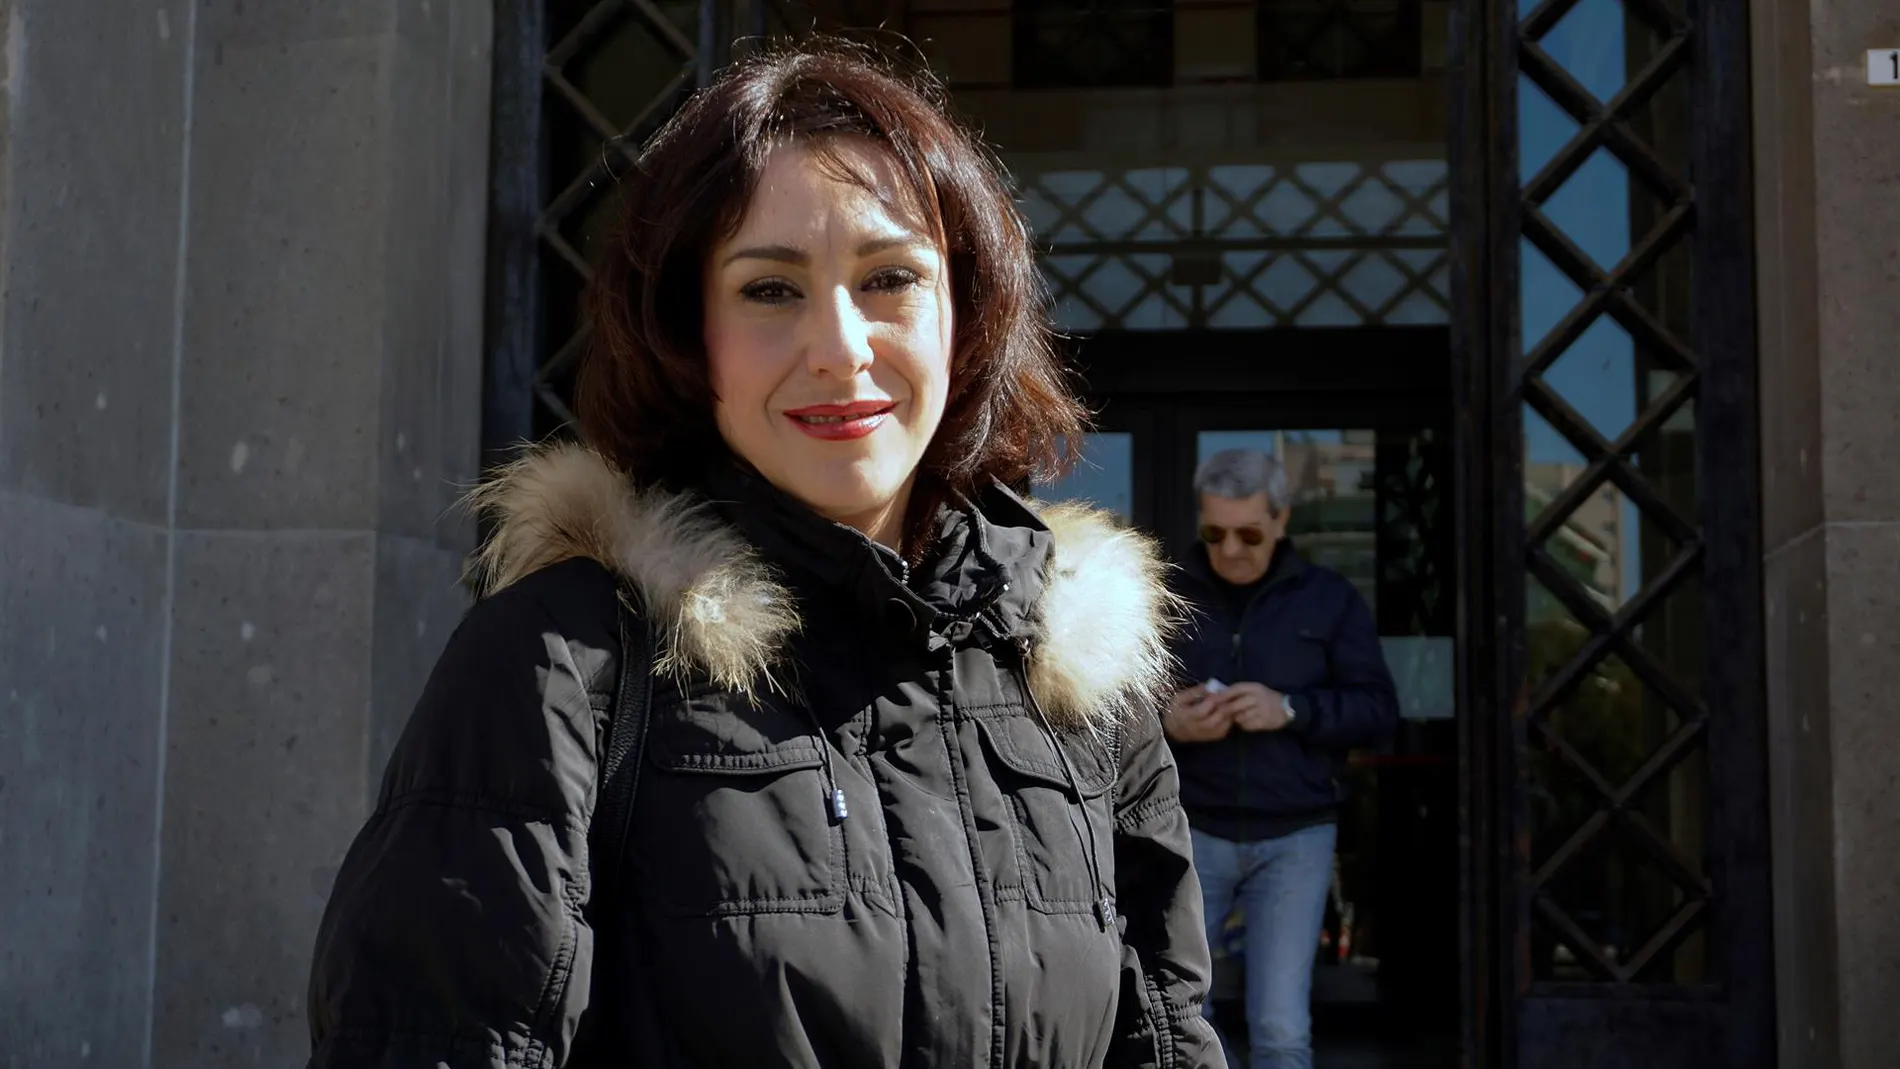 La defensa de Juana Rivas anuncia que llevará a los tribunales internacionales su querella contra el juez Piñar